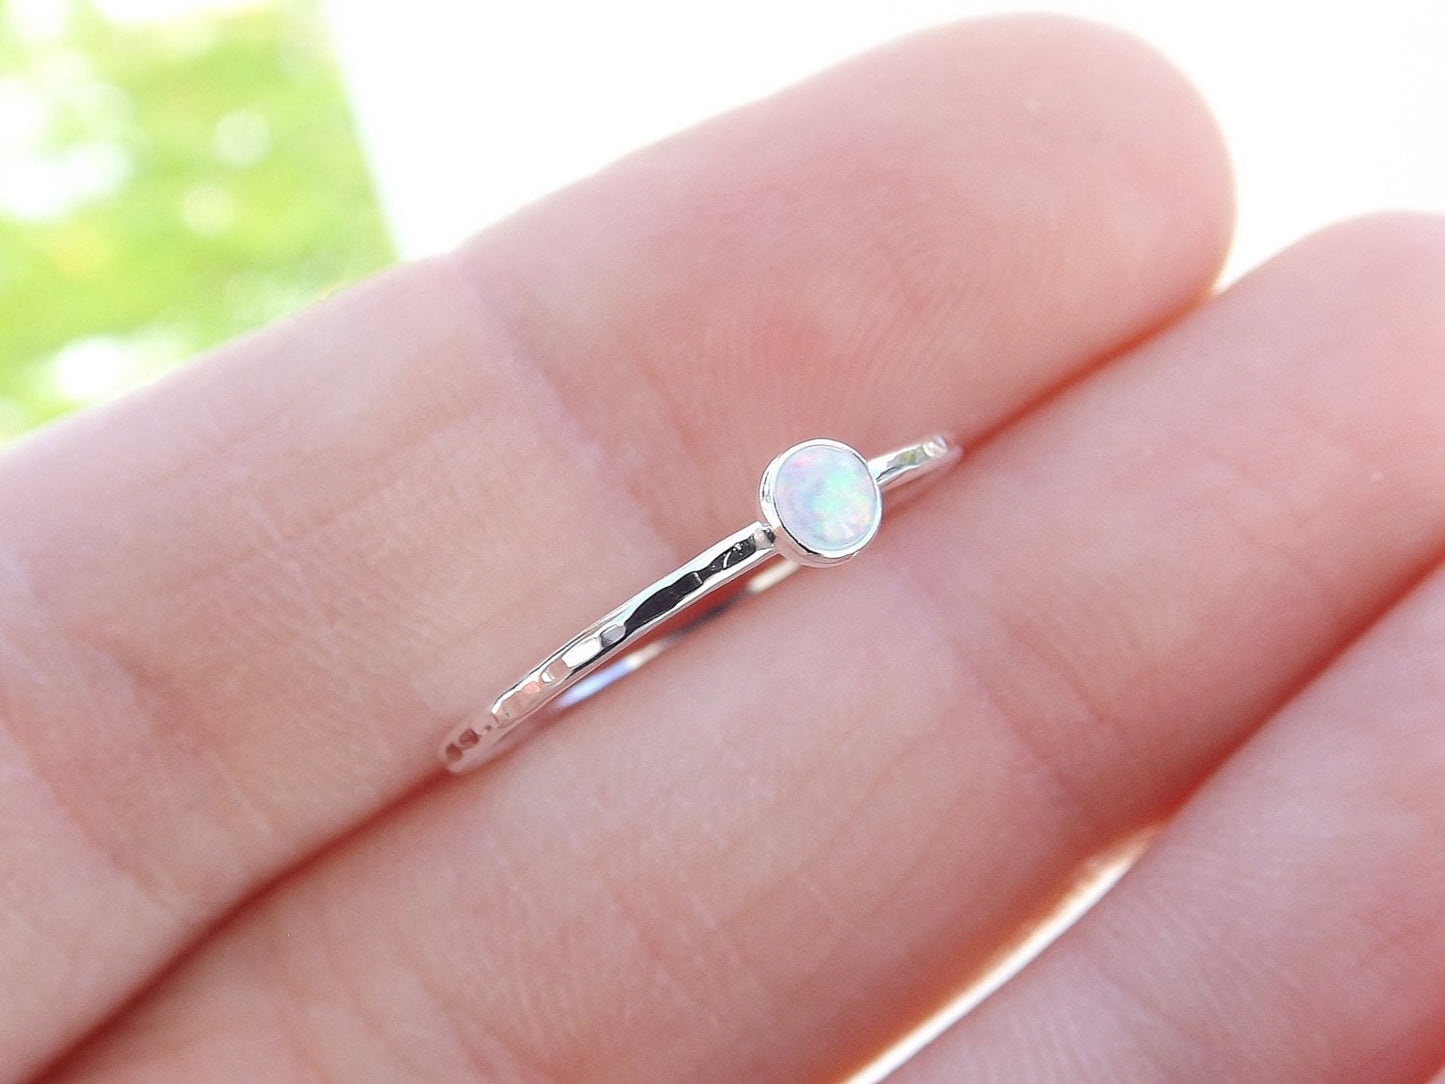 Textured Opal Stacking Ring, Slim Ring, Stacking Gemstone Ring, Opal Rings, Textured Rings, Whisper Gemstone Rings, Gift, White Opal, Gift